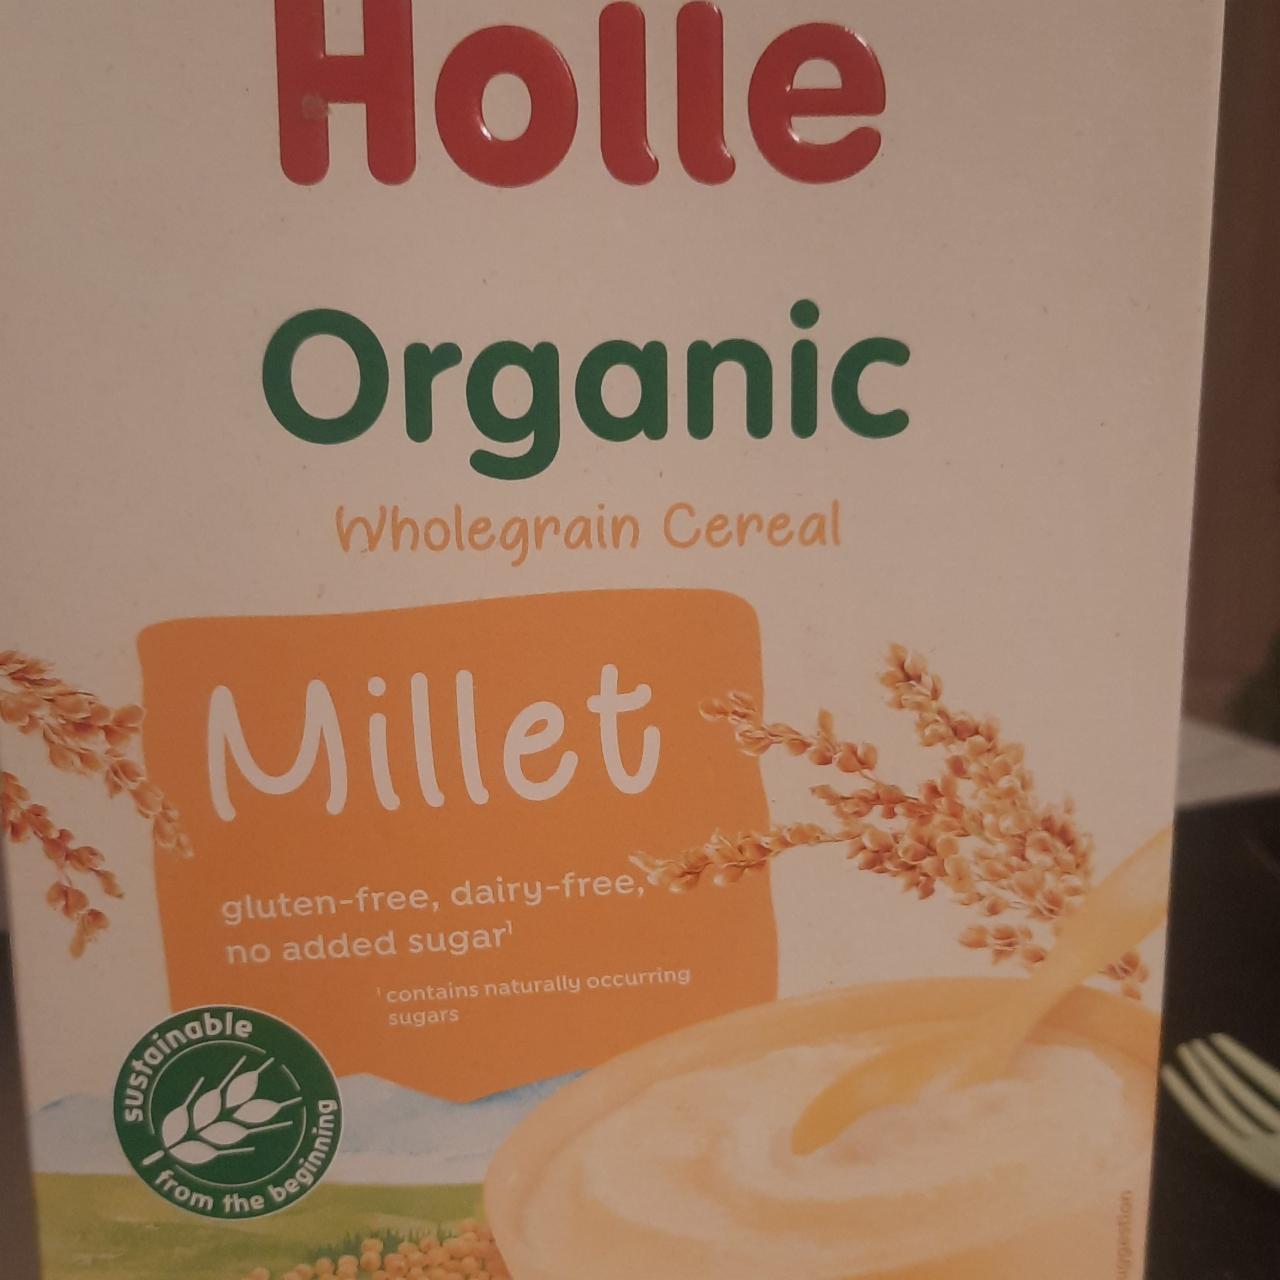 Фото - цельнозерновая каша без глютена, молока и сахара Holle Millet